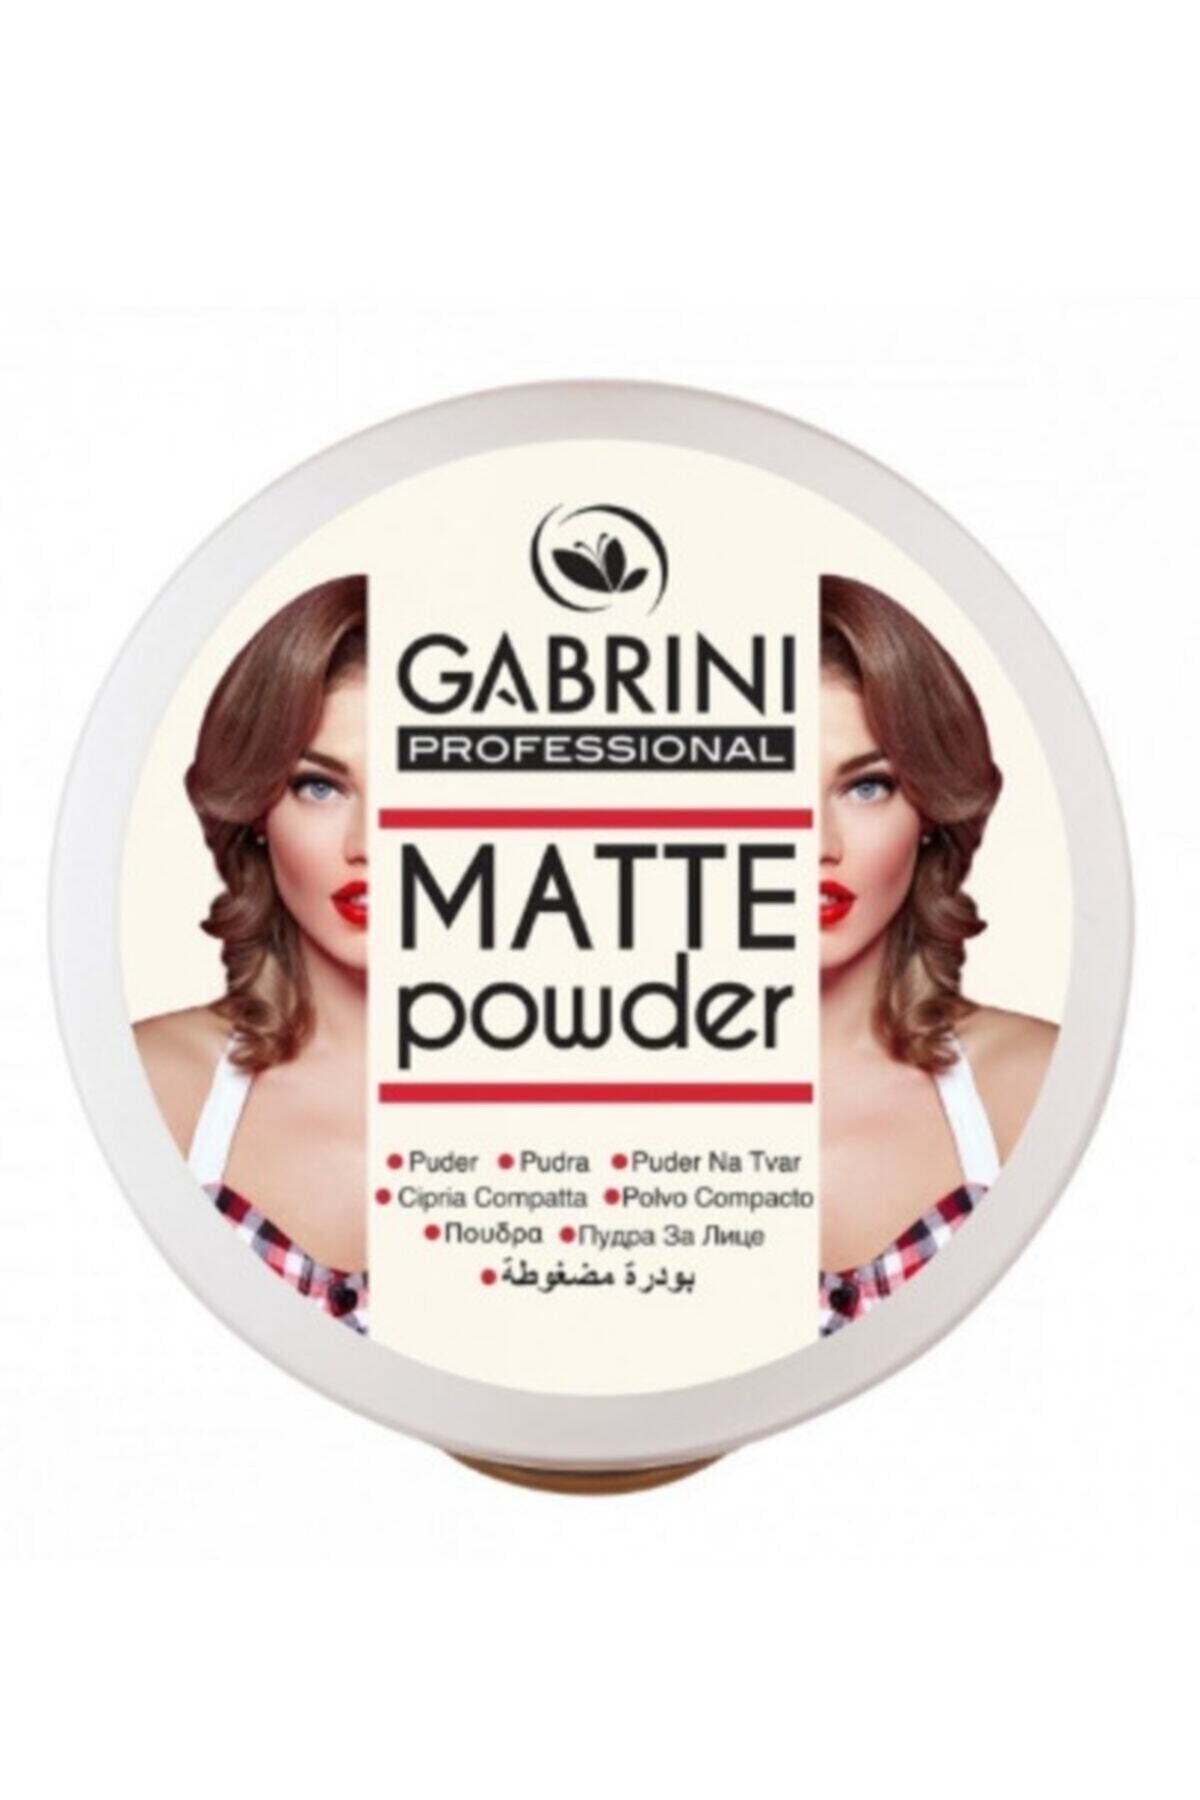 Gabrini Matte Powder -02- Numara Pudra